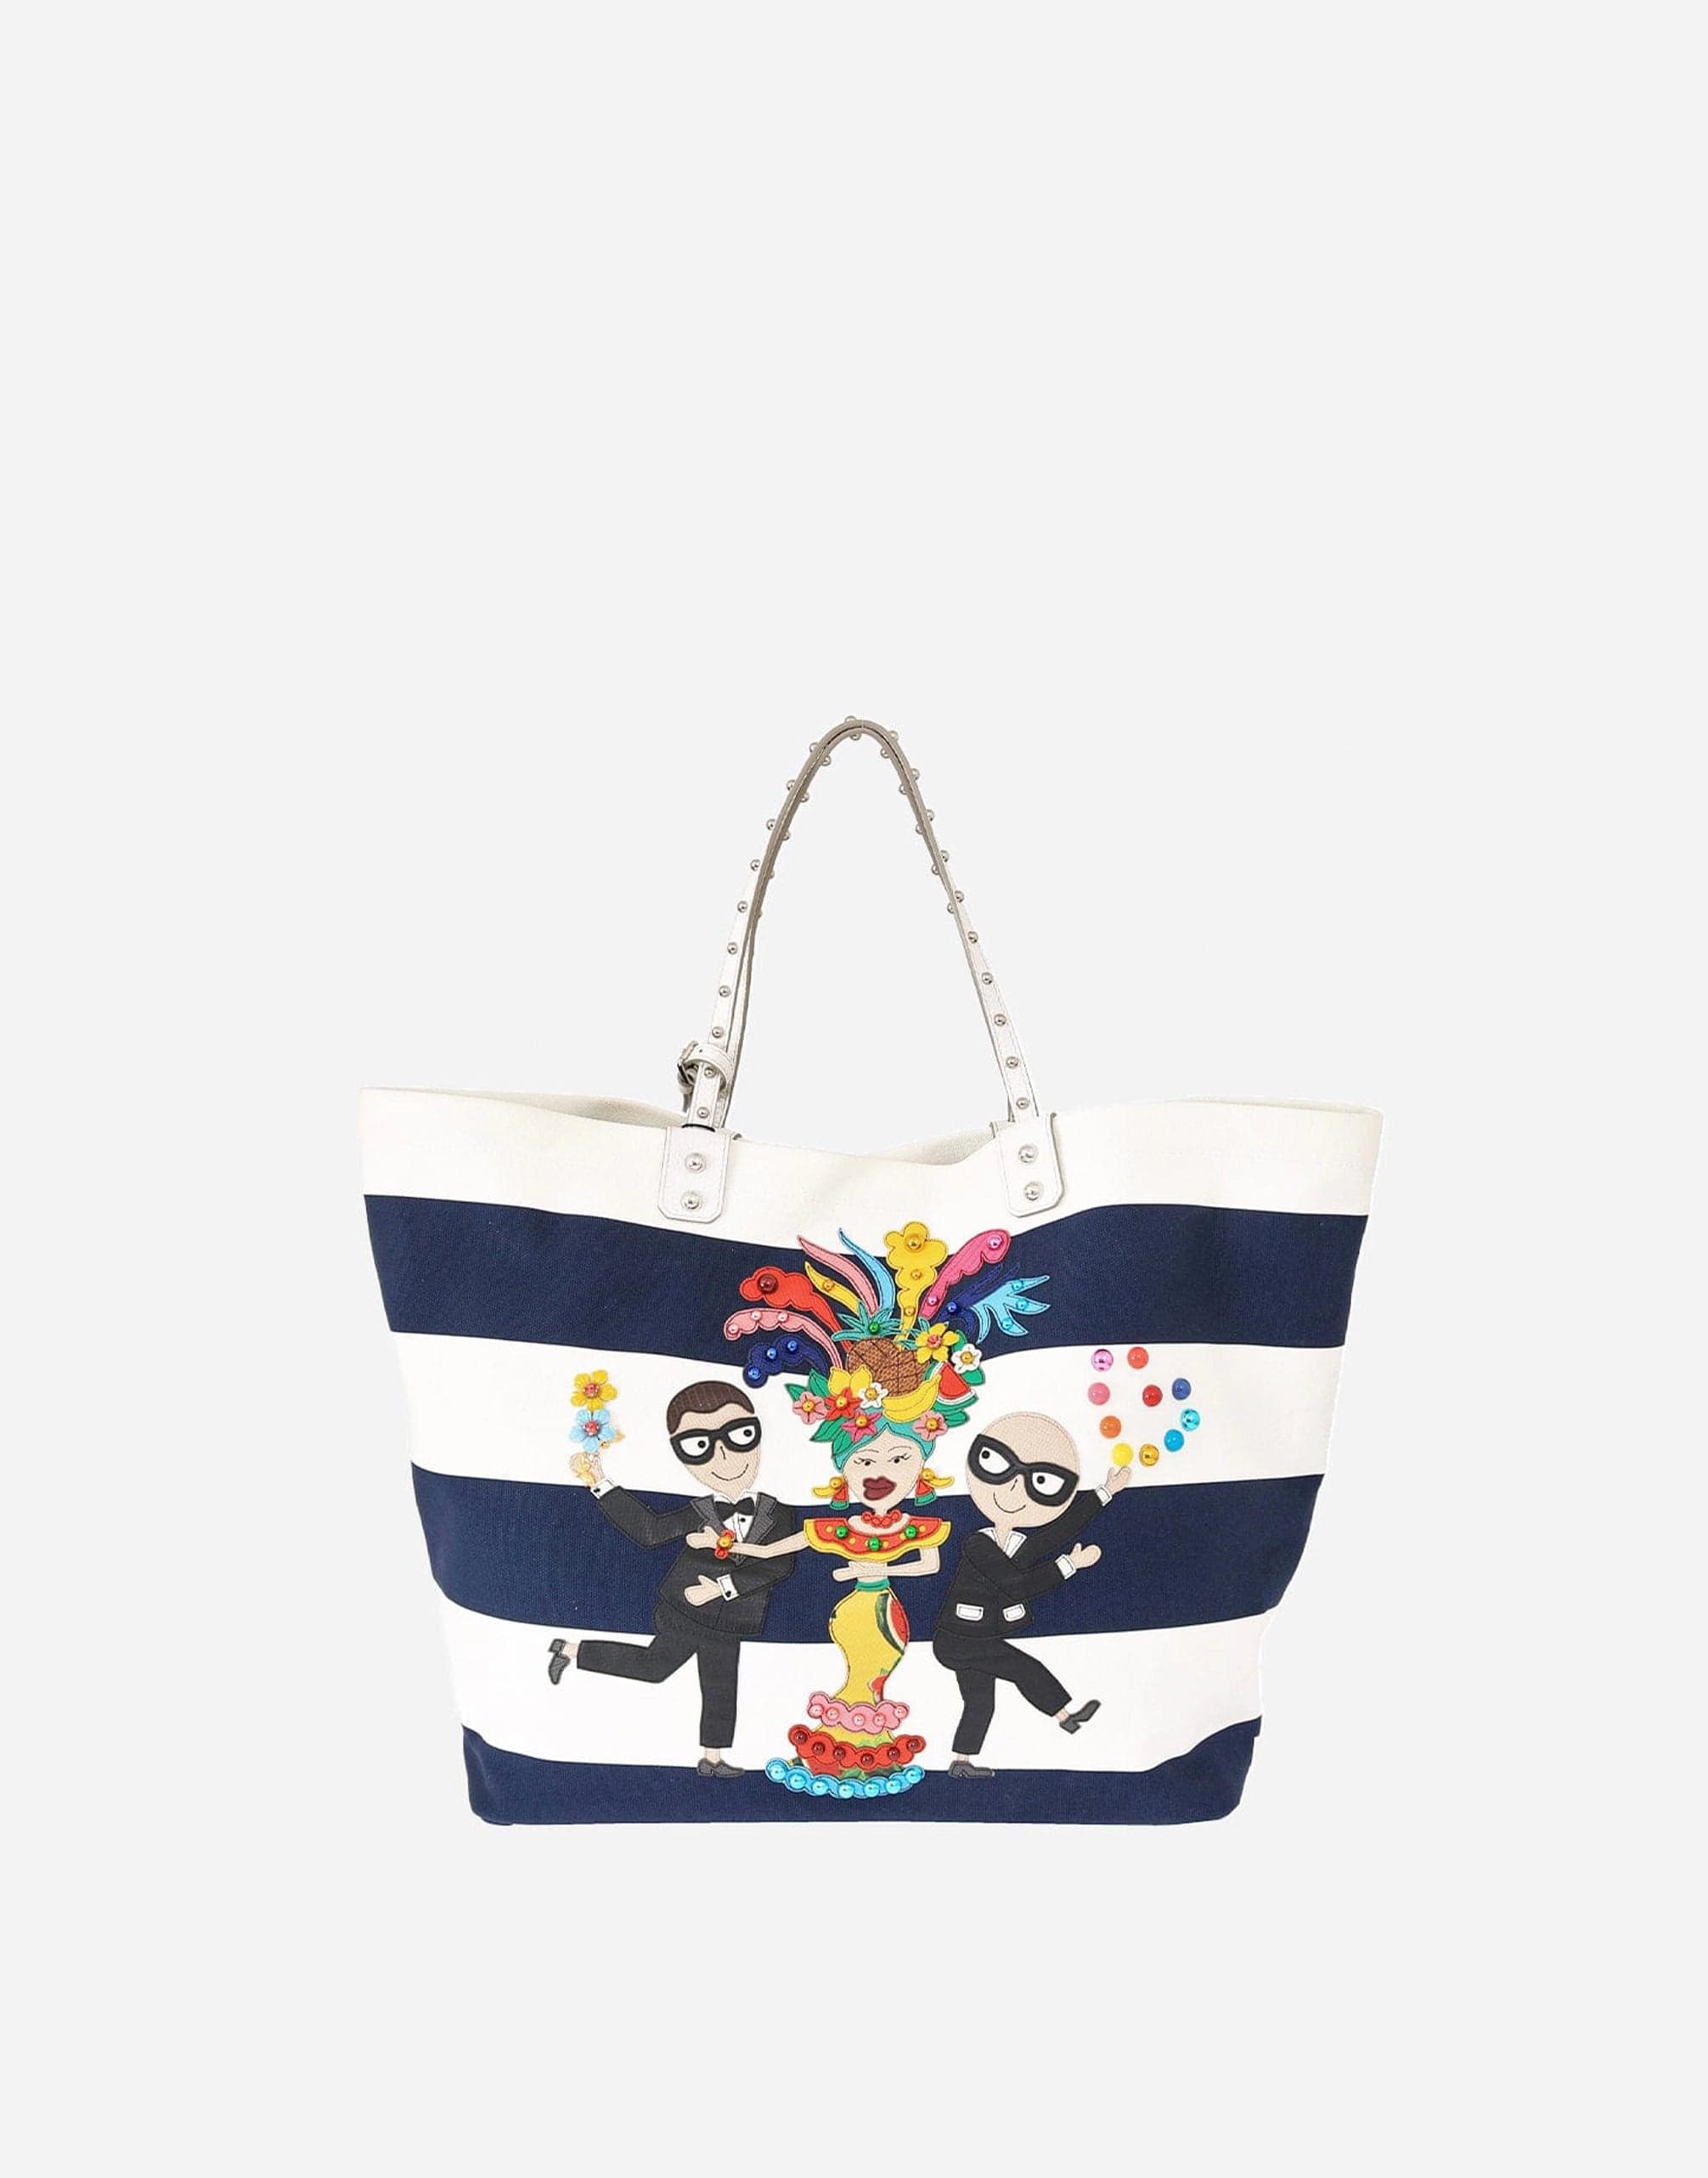 Women's Devotion Small Handbag by Dolce & Gabbana | Coltorti Boutique